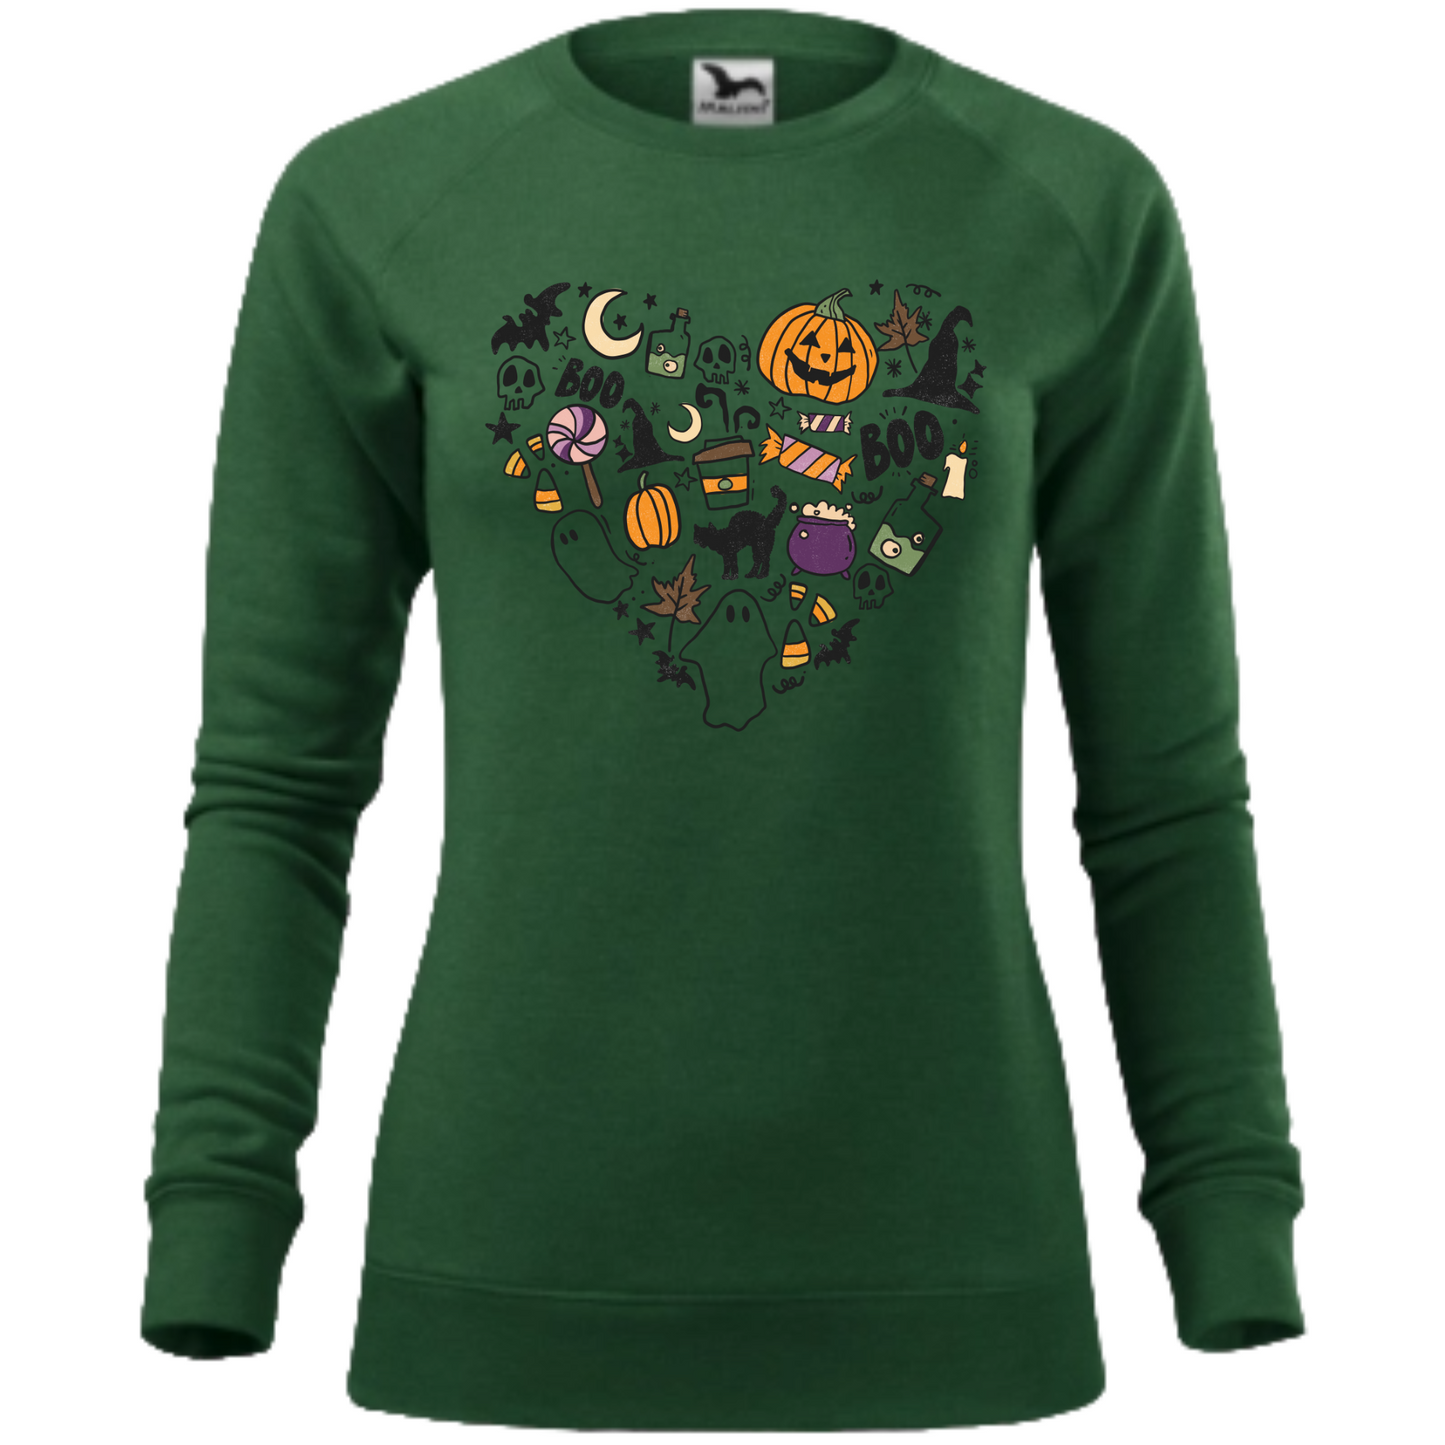 Bluza de Halloween cu o inimă creată din simboluri tematice, incluzând dovleci, lilieci și păianjeni.